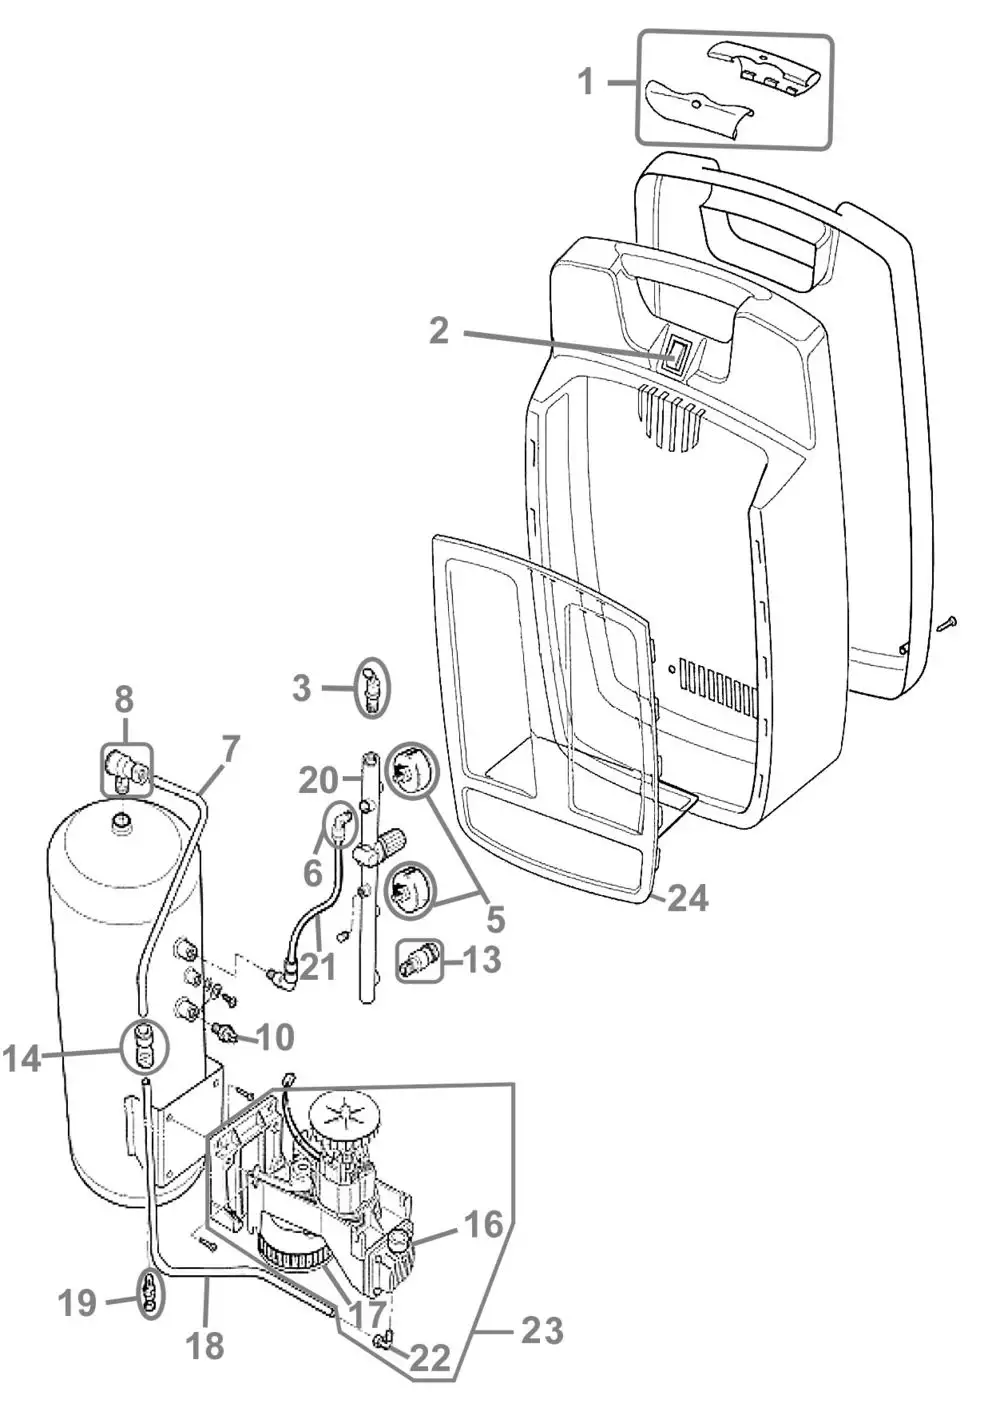 Zeichnung - GUEDE Kompressor Airpower 200/08/6 - 50079